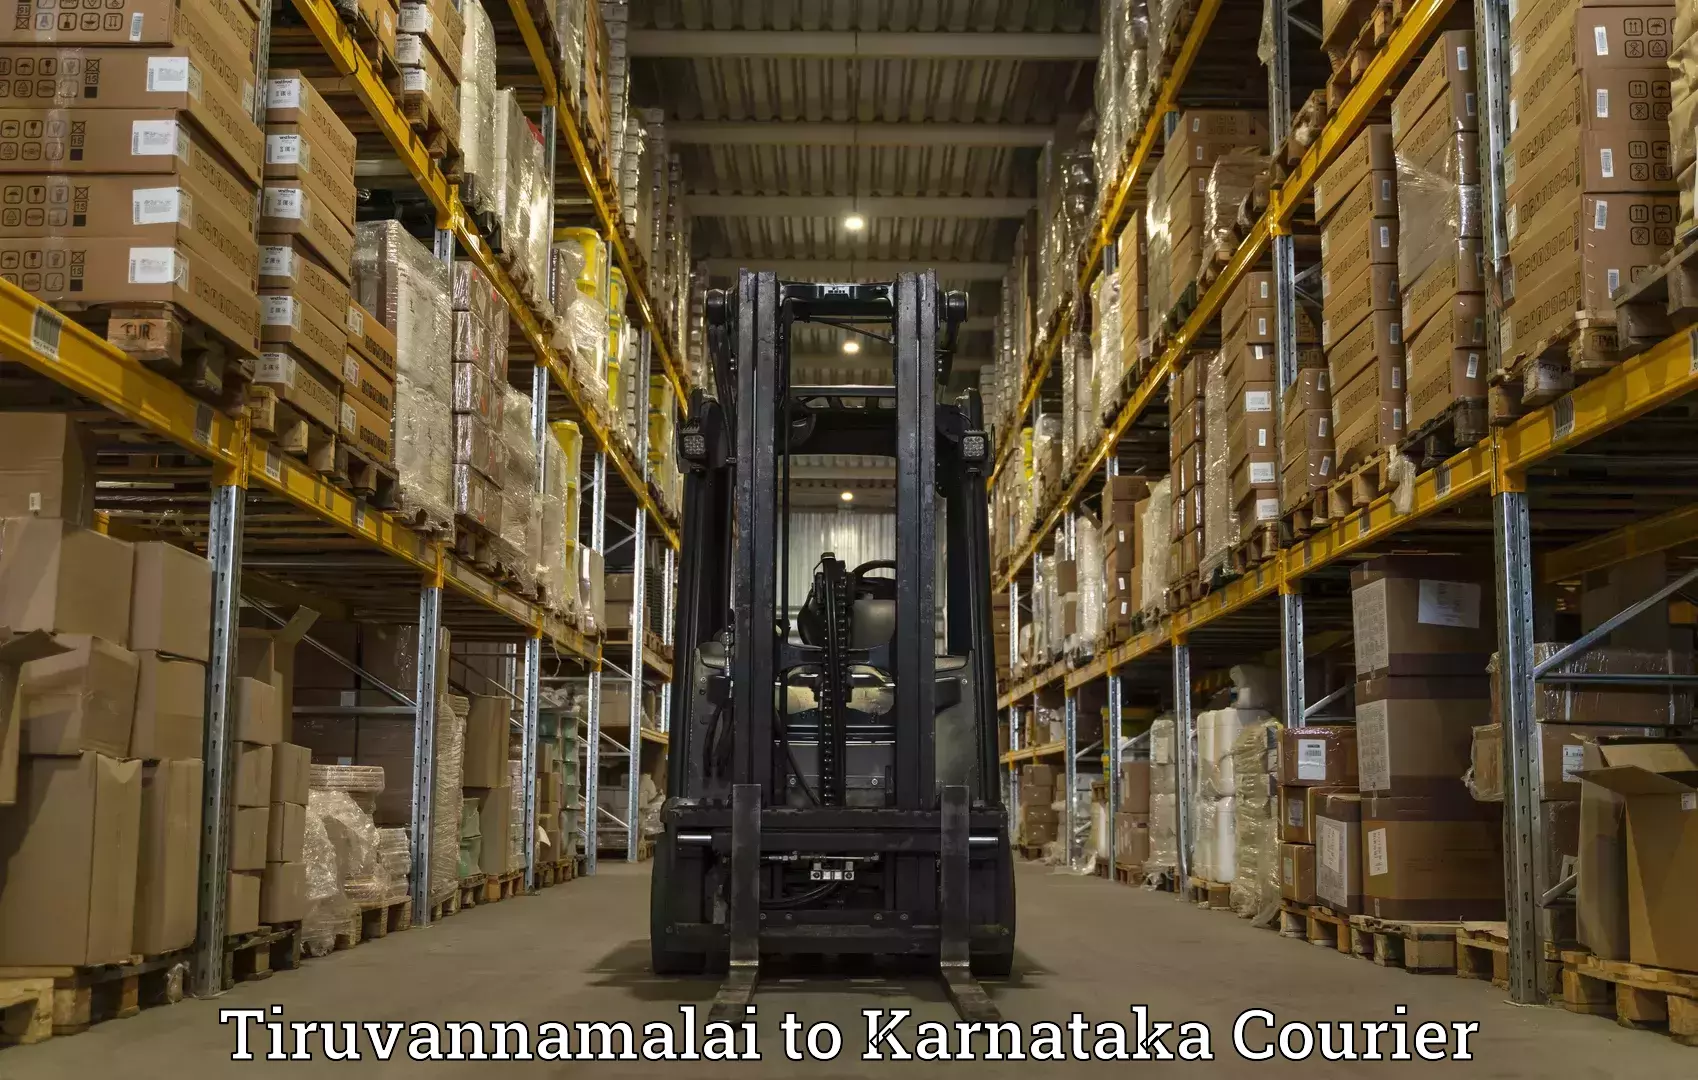 Multi-city courier Tiruvannamalai to Shanivarasanthe